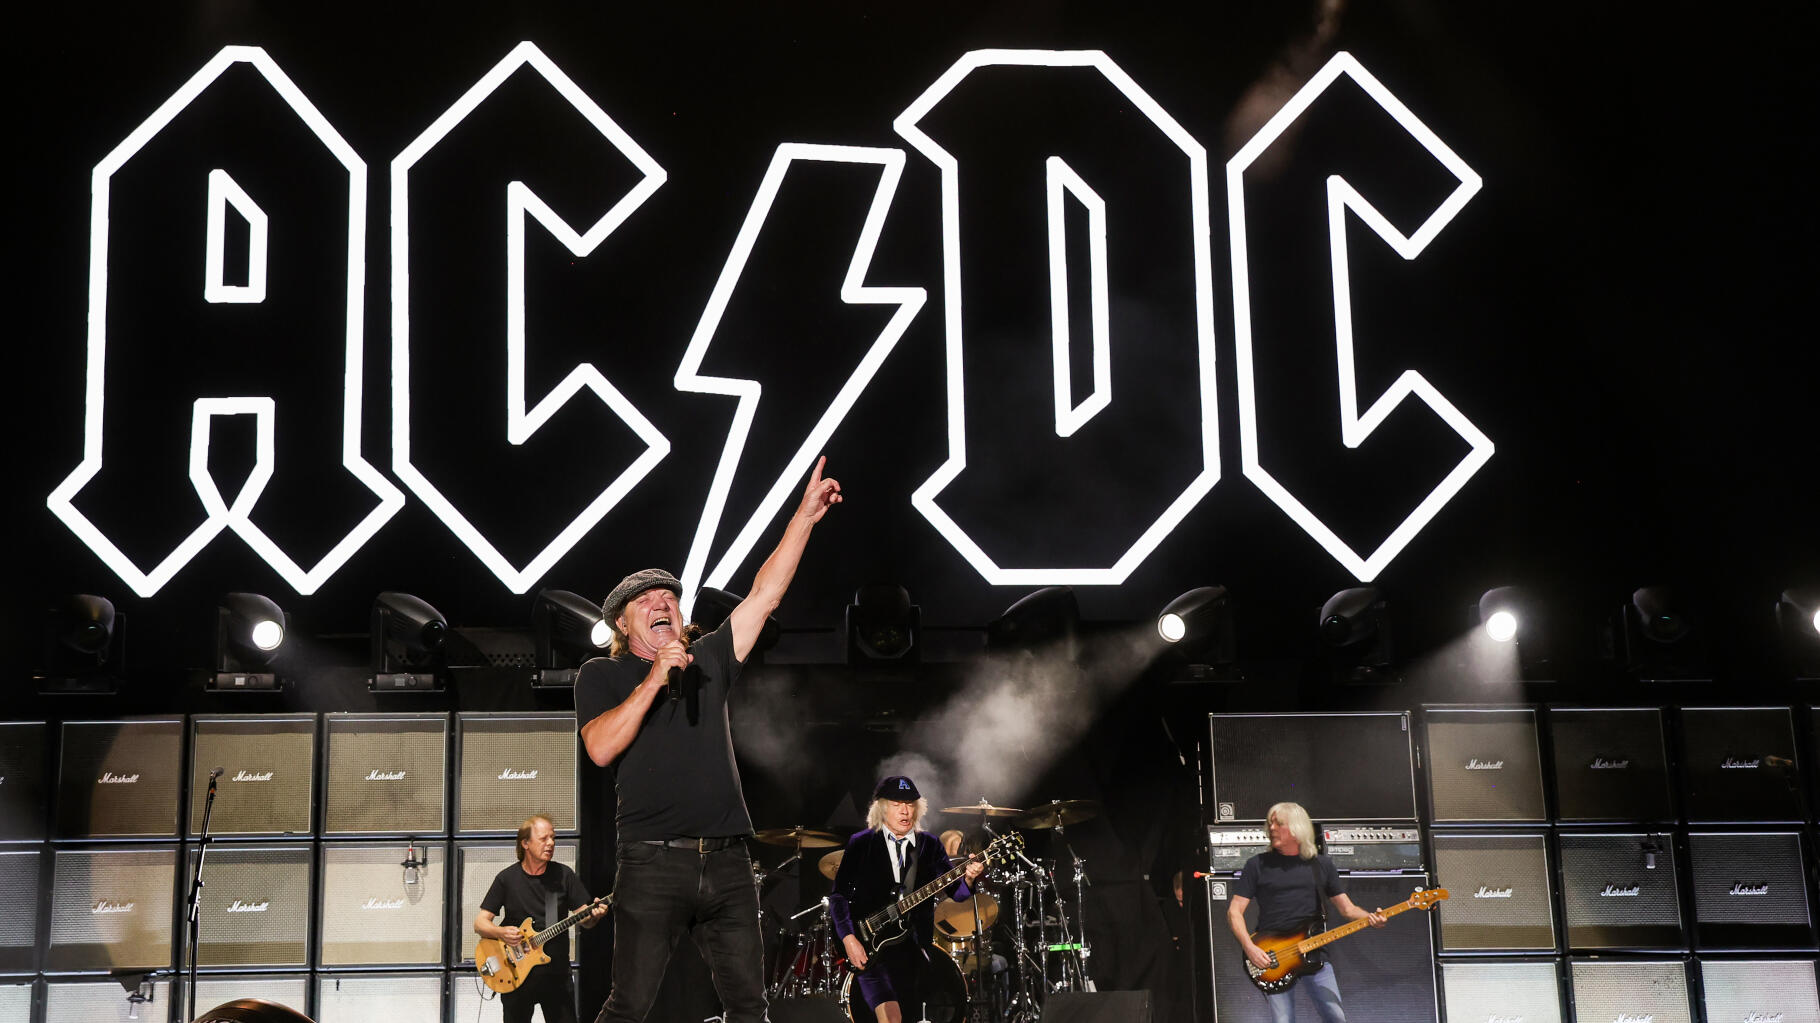   Le groupe AC/DC de retour en France pour un concert à l’hippodrome de ParisLongchamp juste après les JO  